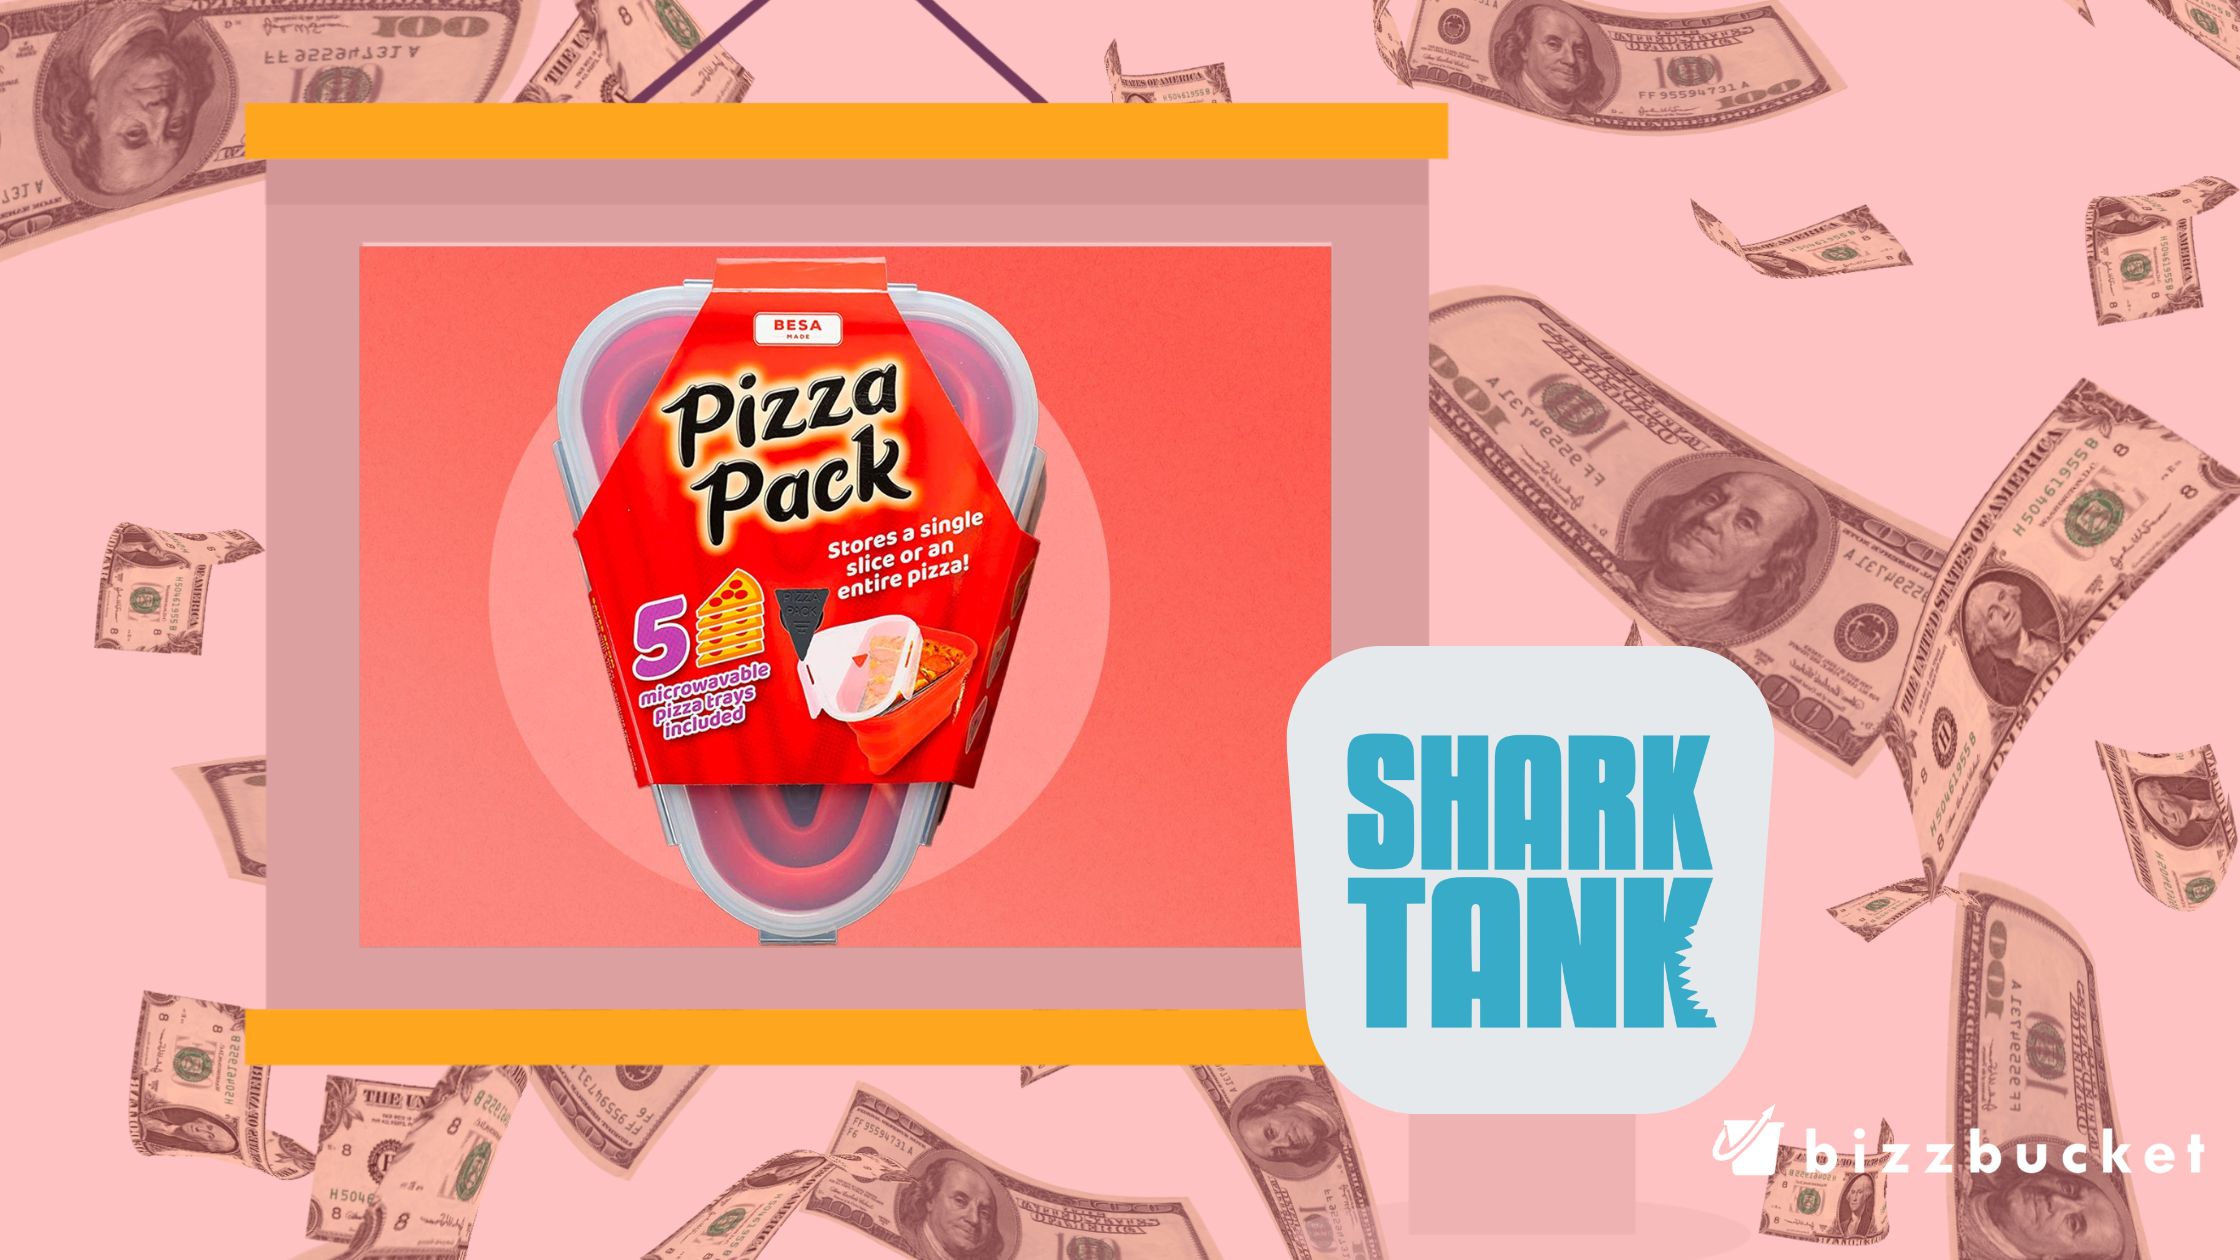 Pizza Pack shark tank update